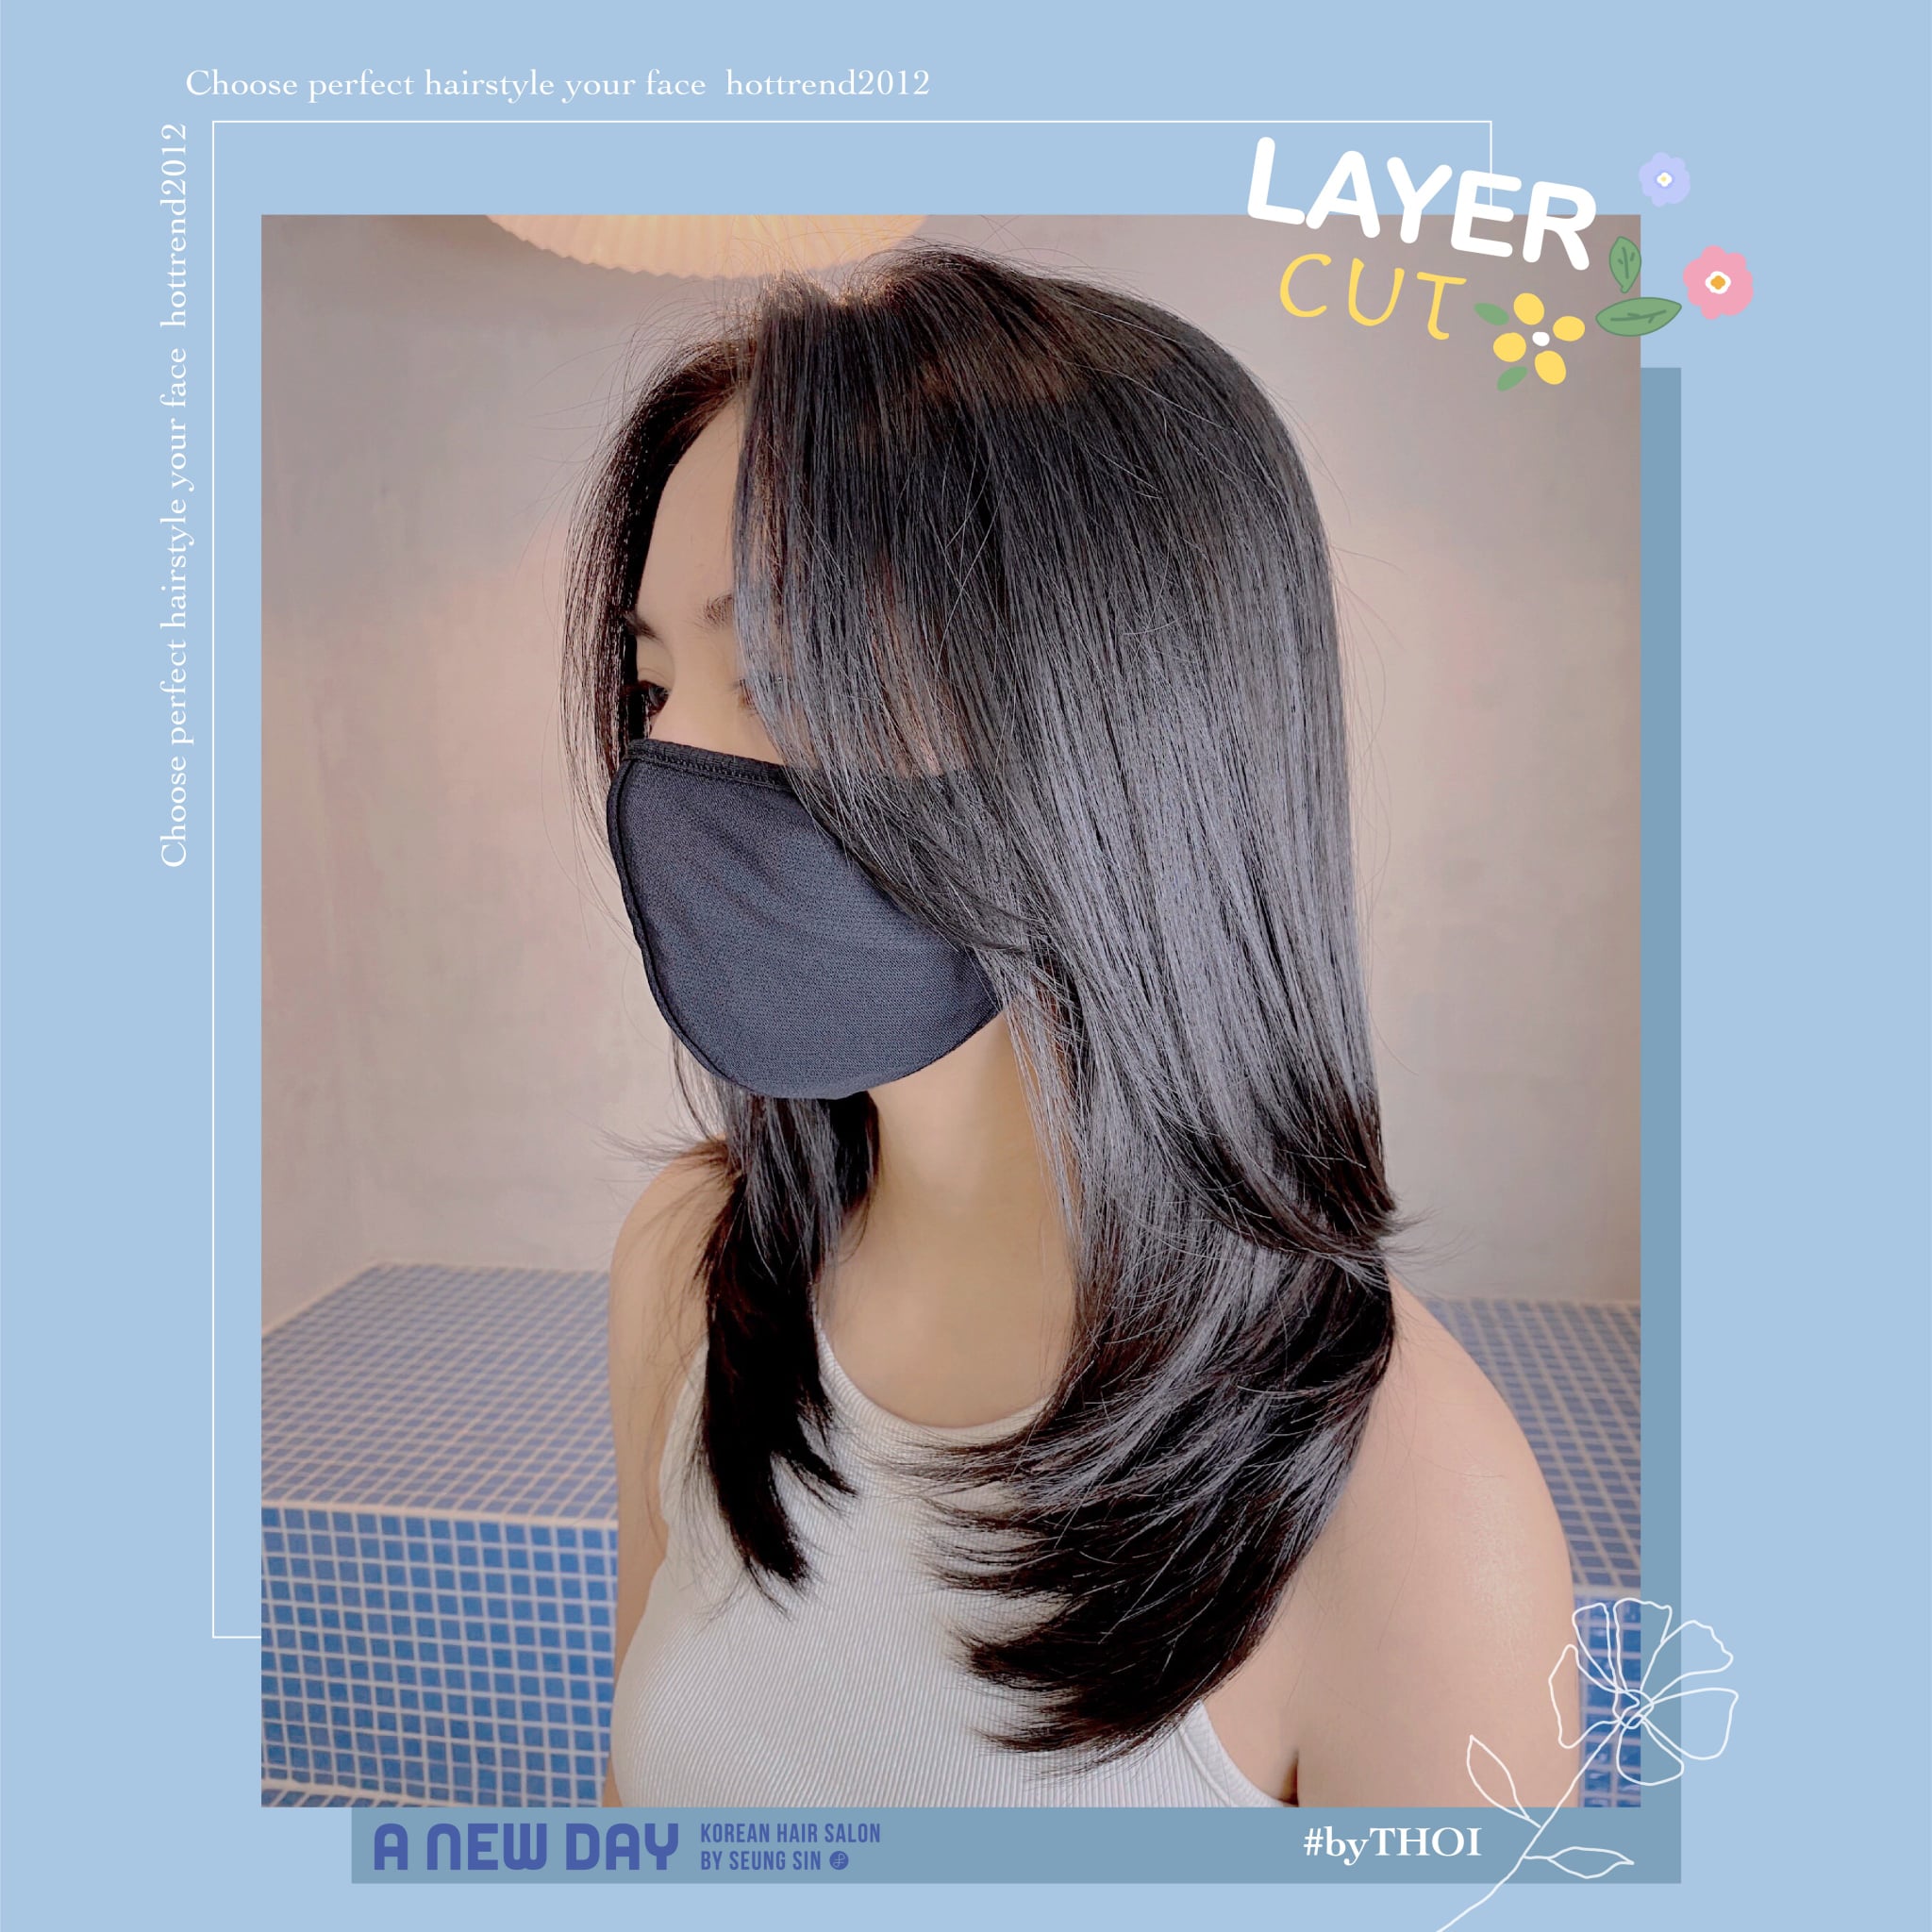 A New Day - Korean Hair Salon ảnh 1